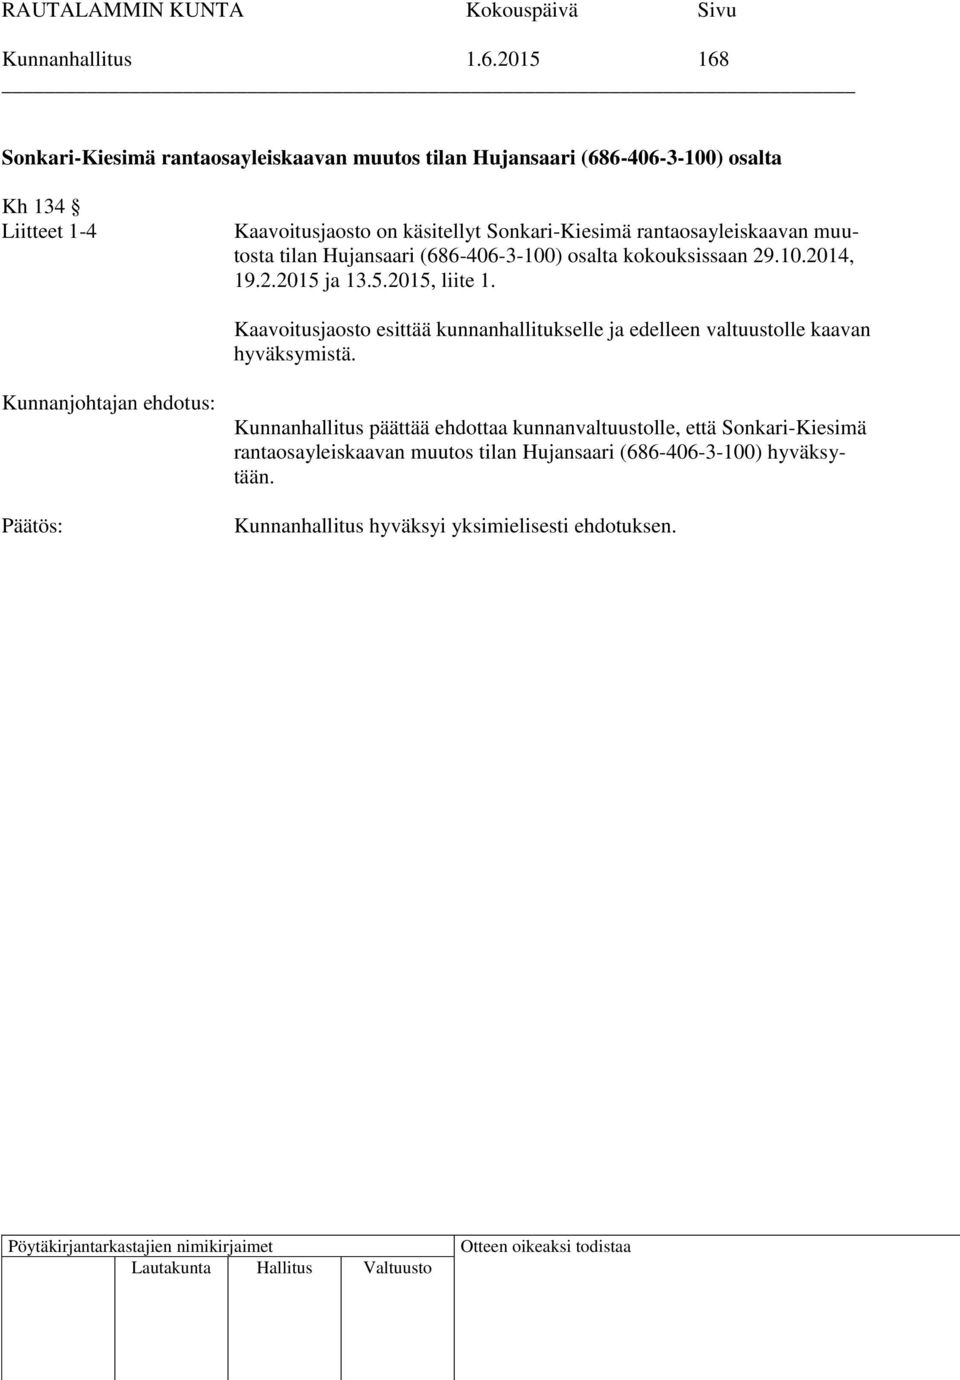 käsitellyt Sonkari-Kiesimä rantaosayleiskaavan muutosta tilan Hujansaari (686-406-3-100) osalta kokouksissaan 29.10.2014, 19.2.2015 ja 13.